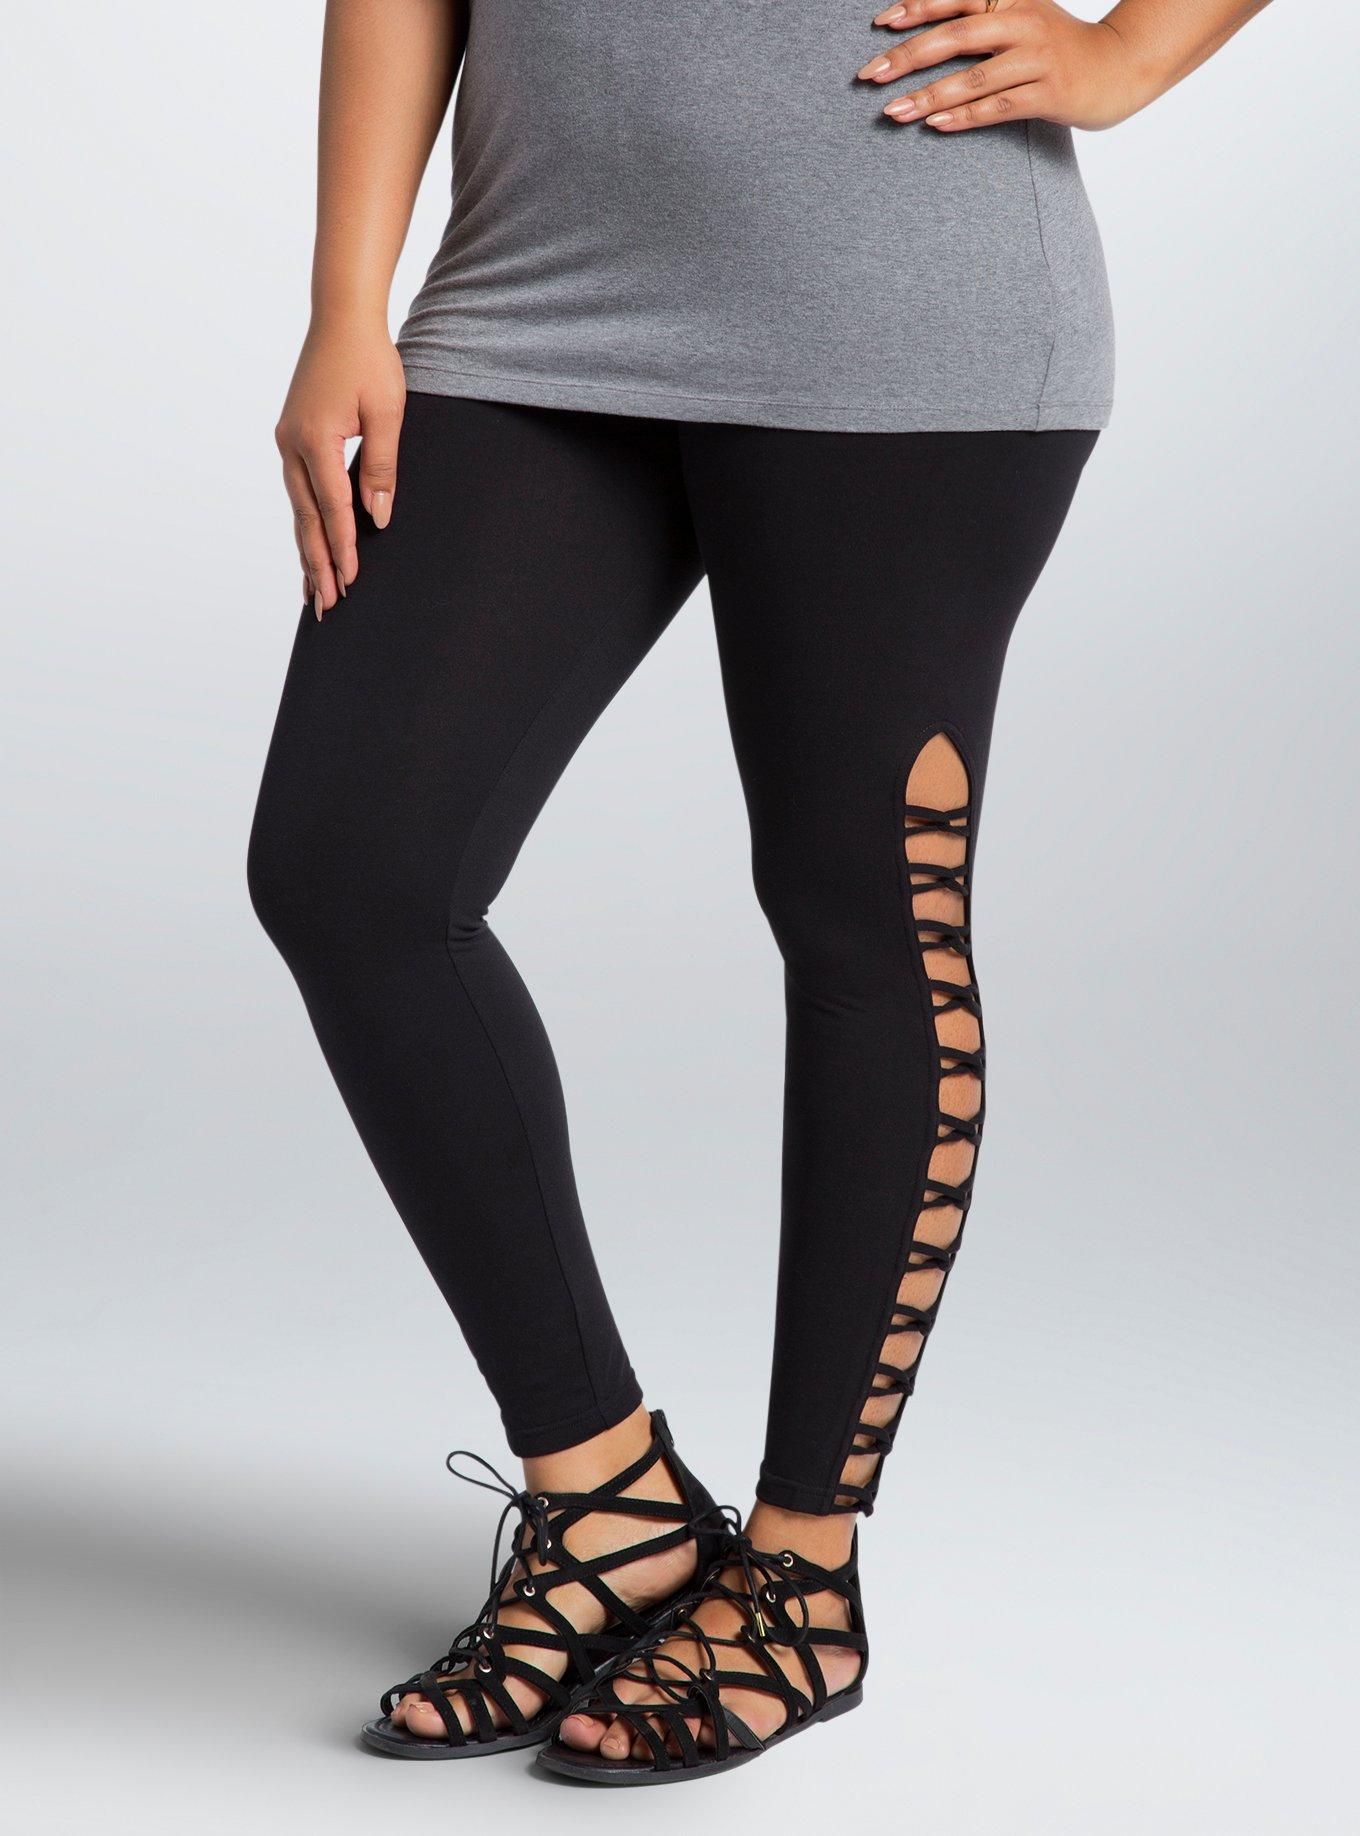 Lattice Legging – Flaw•Some Fashion